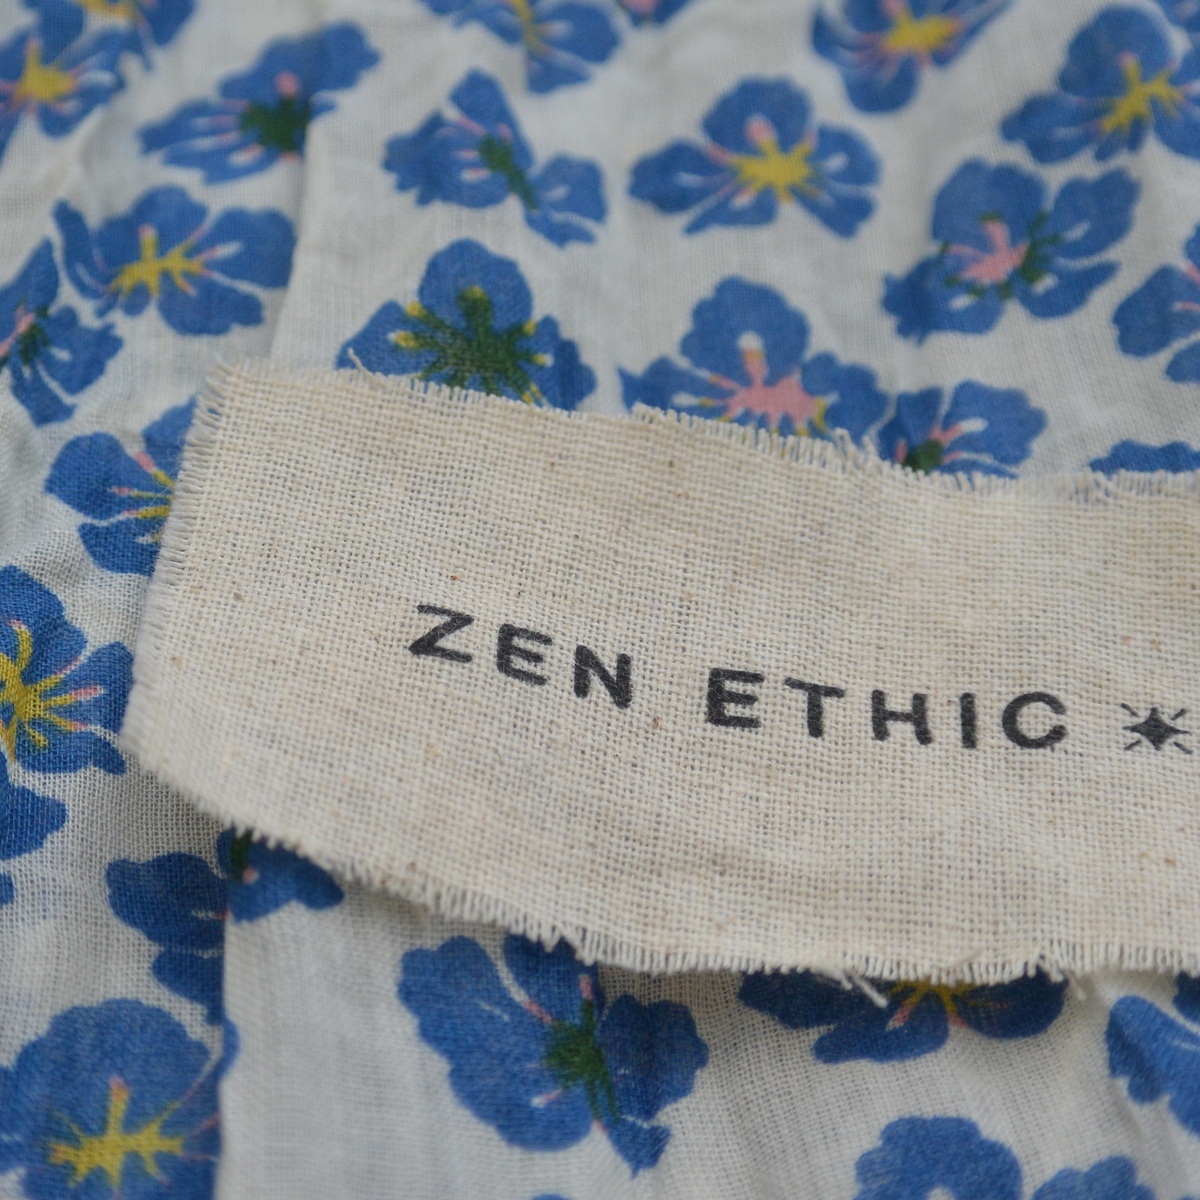 foulard zen ethic grande-etole-pansy-voile-de-coton-110x180cm une idee cadeau chez ugo et lea   (7)